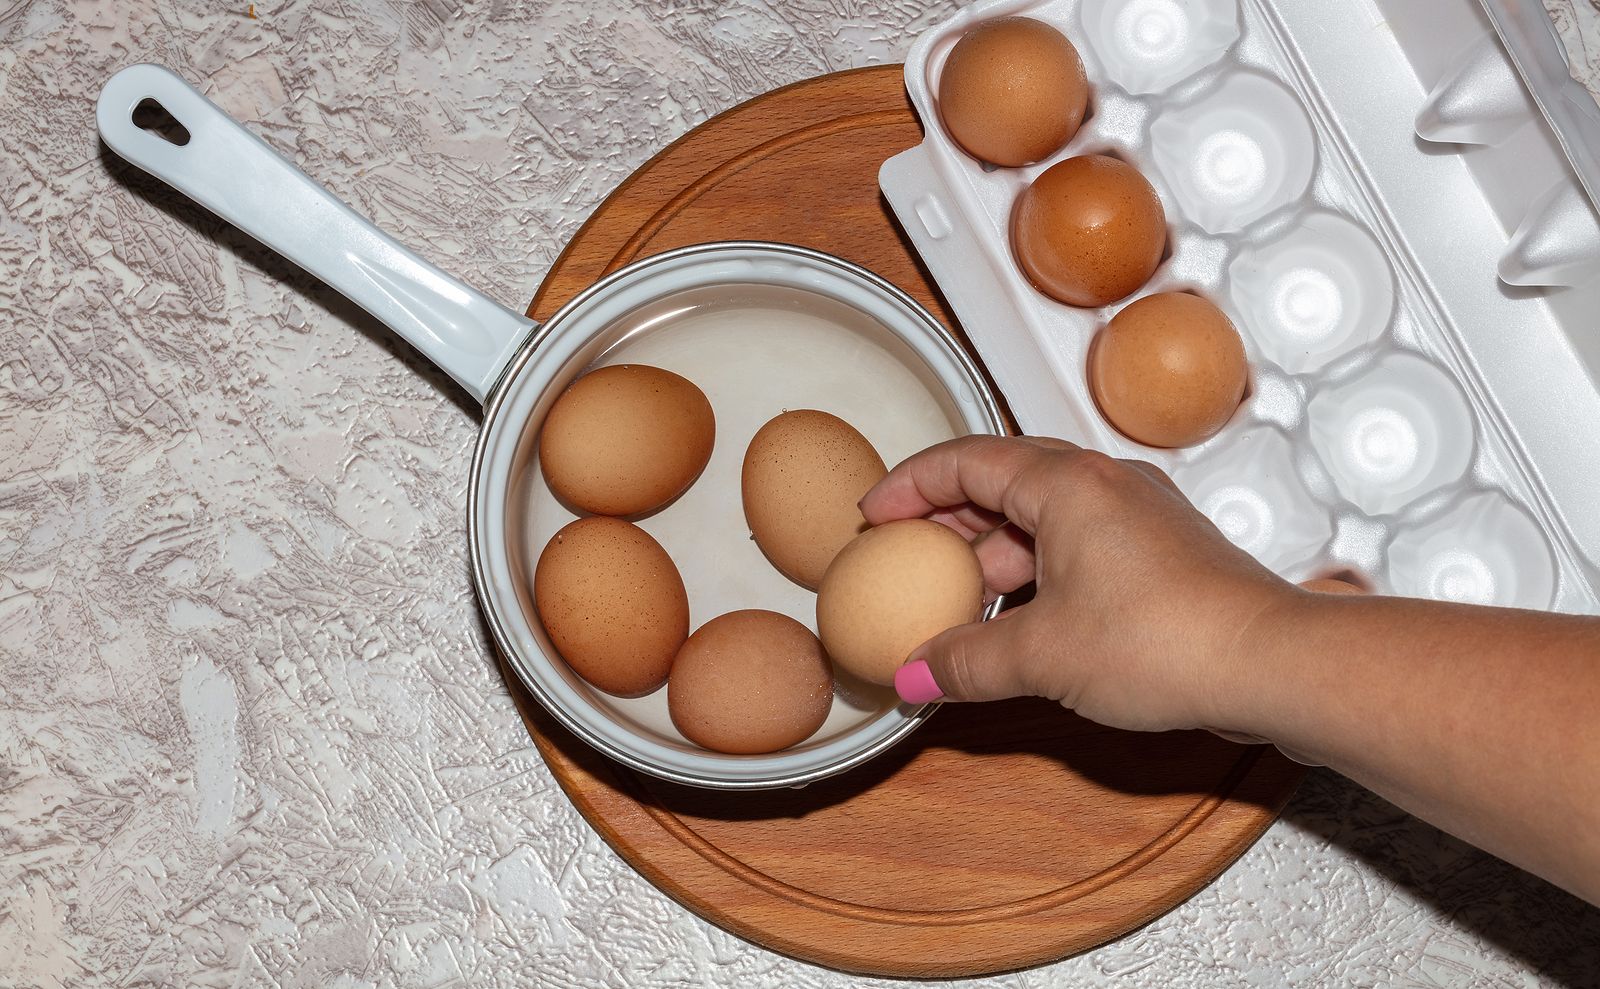 ¿Cómo identificar un huevo en mal estado? Foto: bigstock